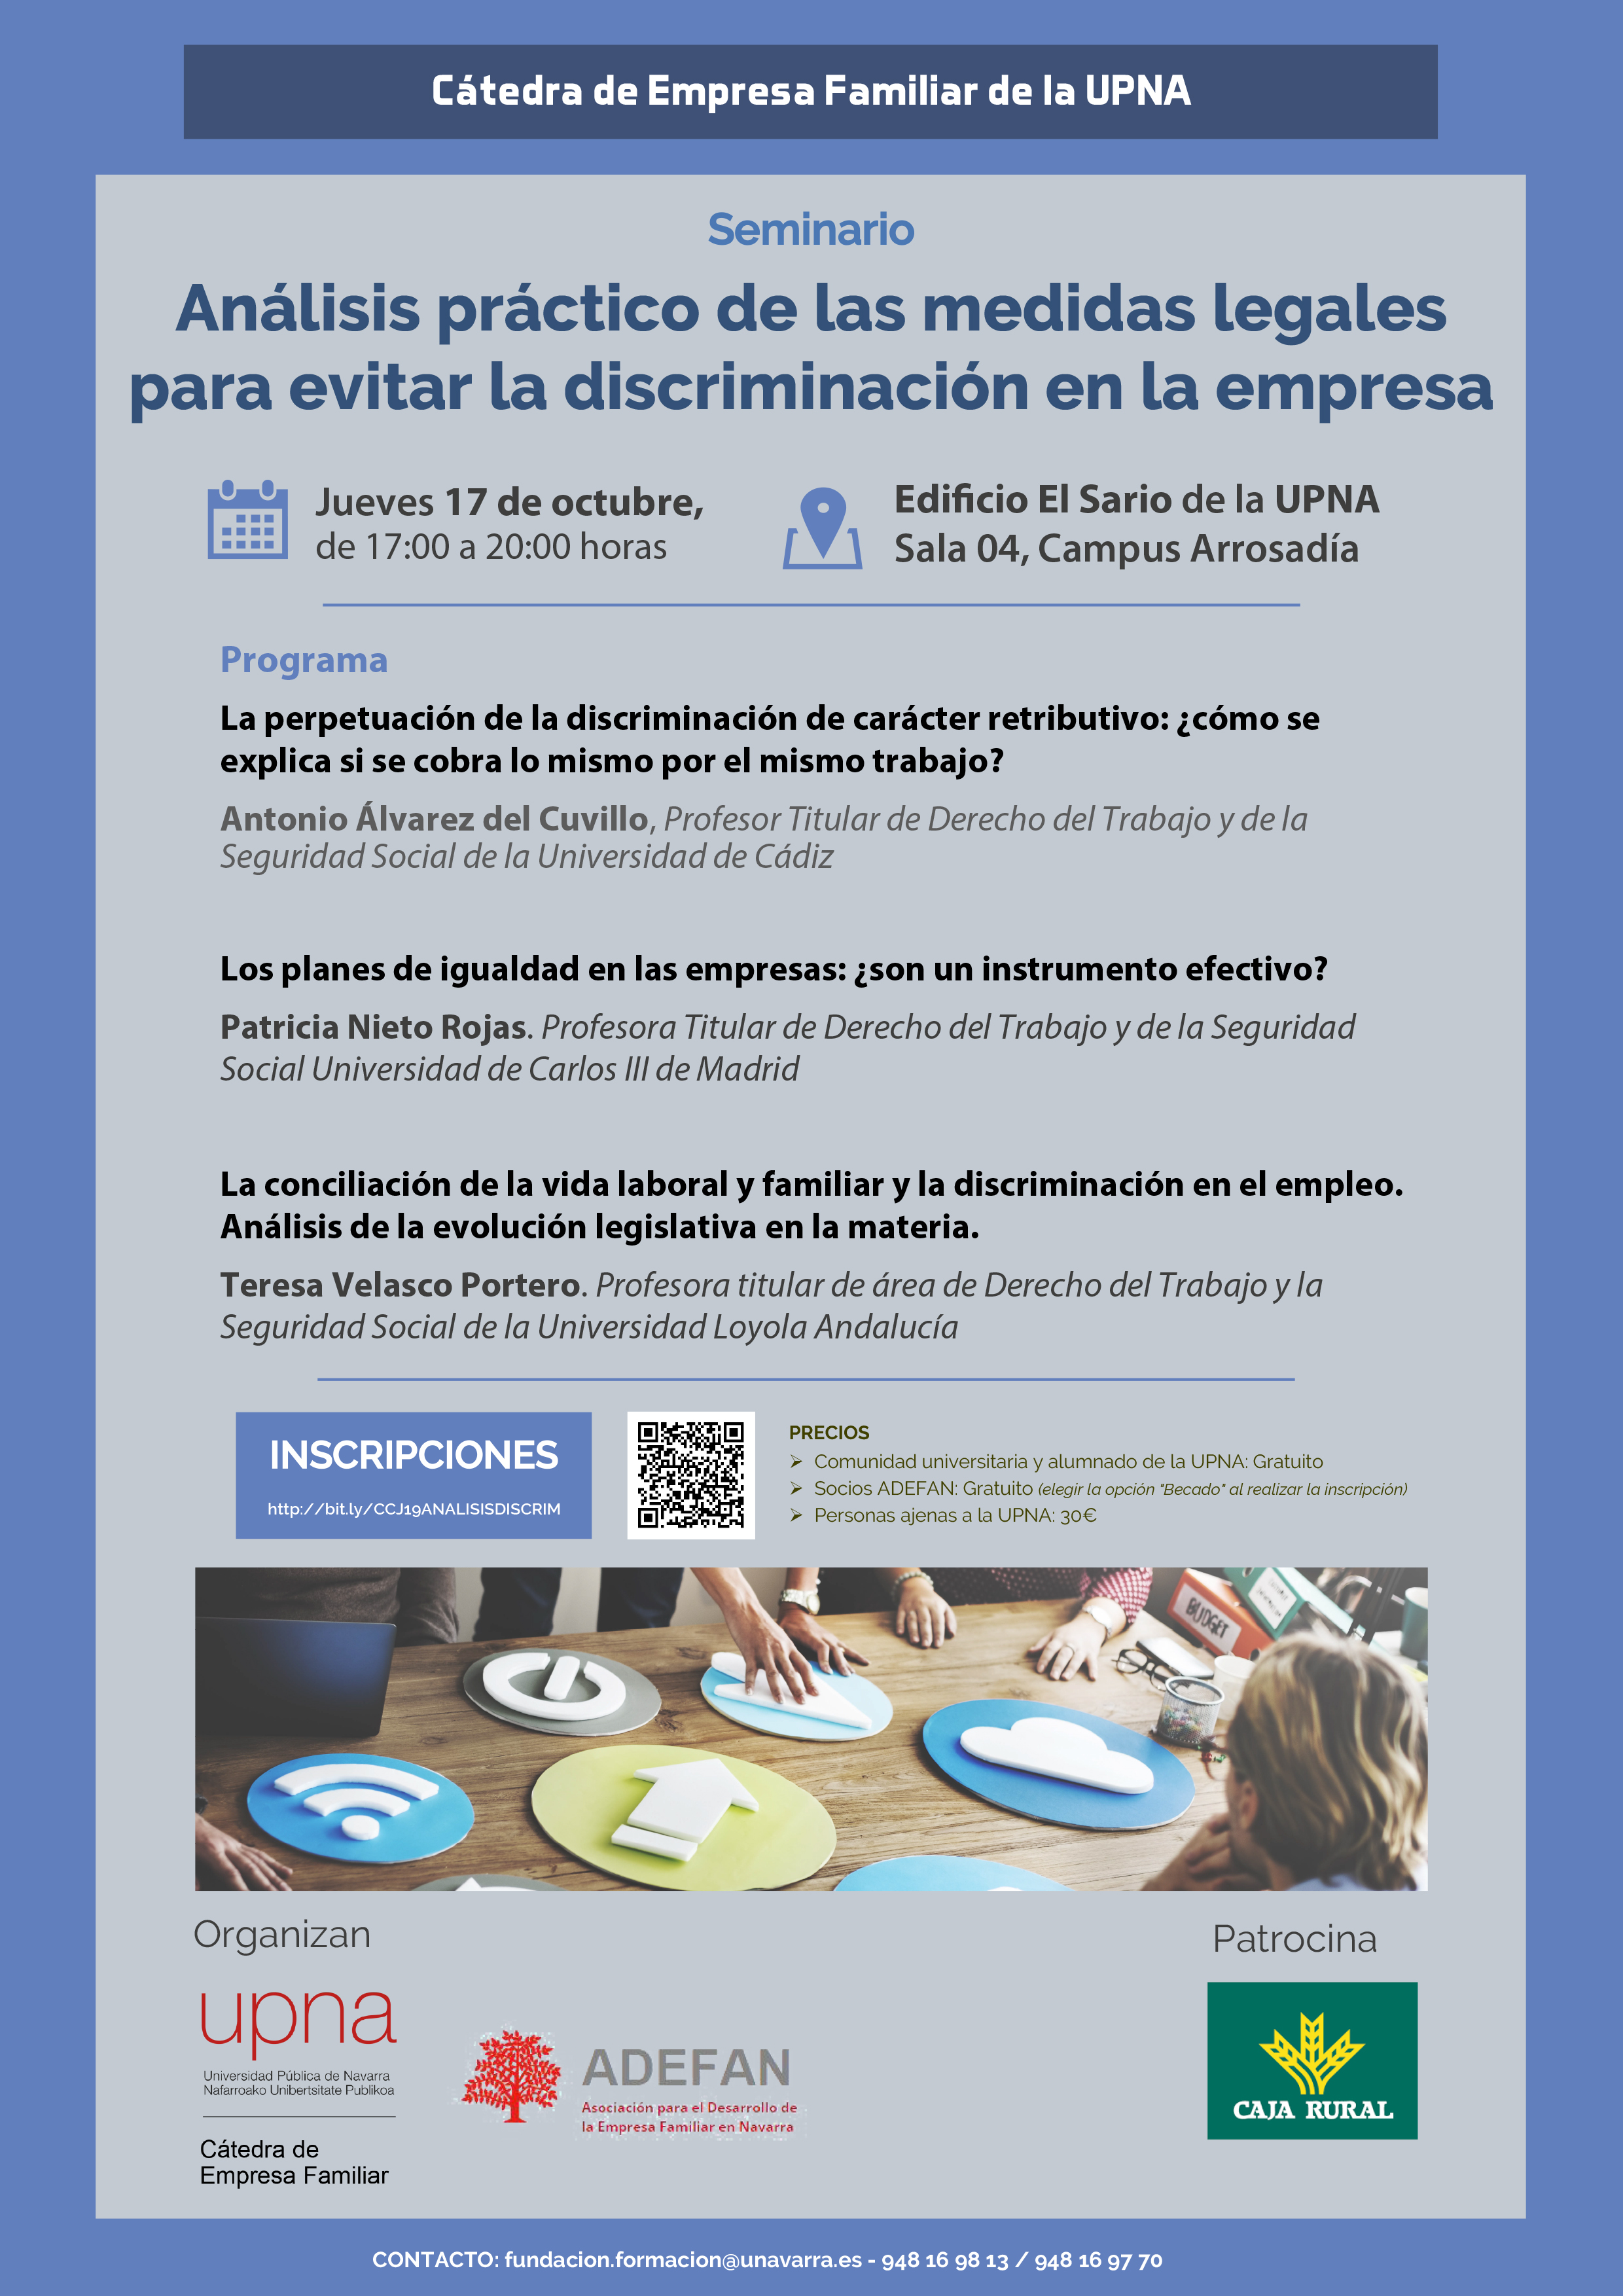 Análisis práctico de las medidas legales para evitar la discriminación en la empresa